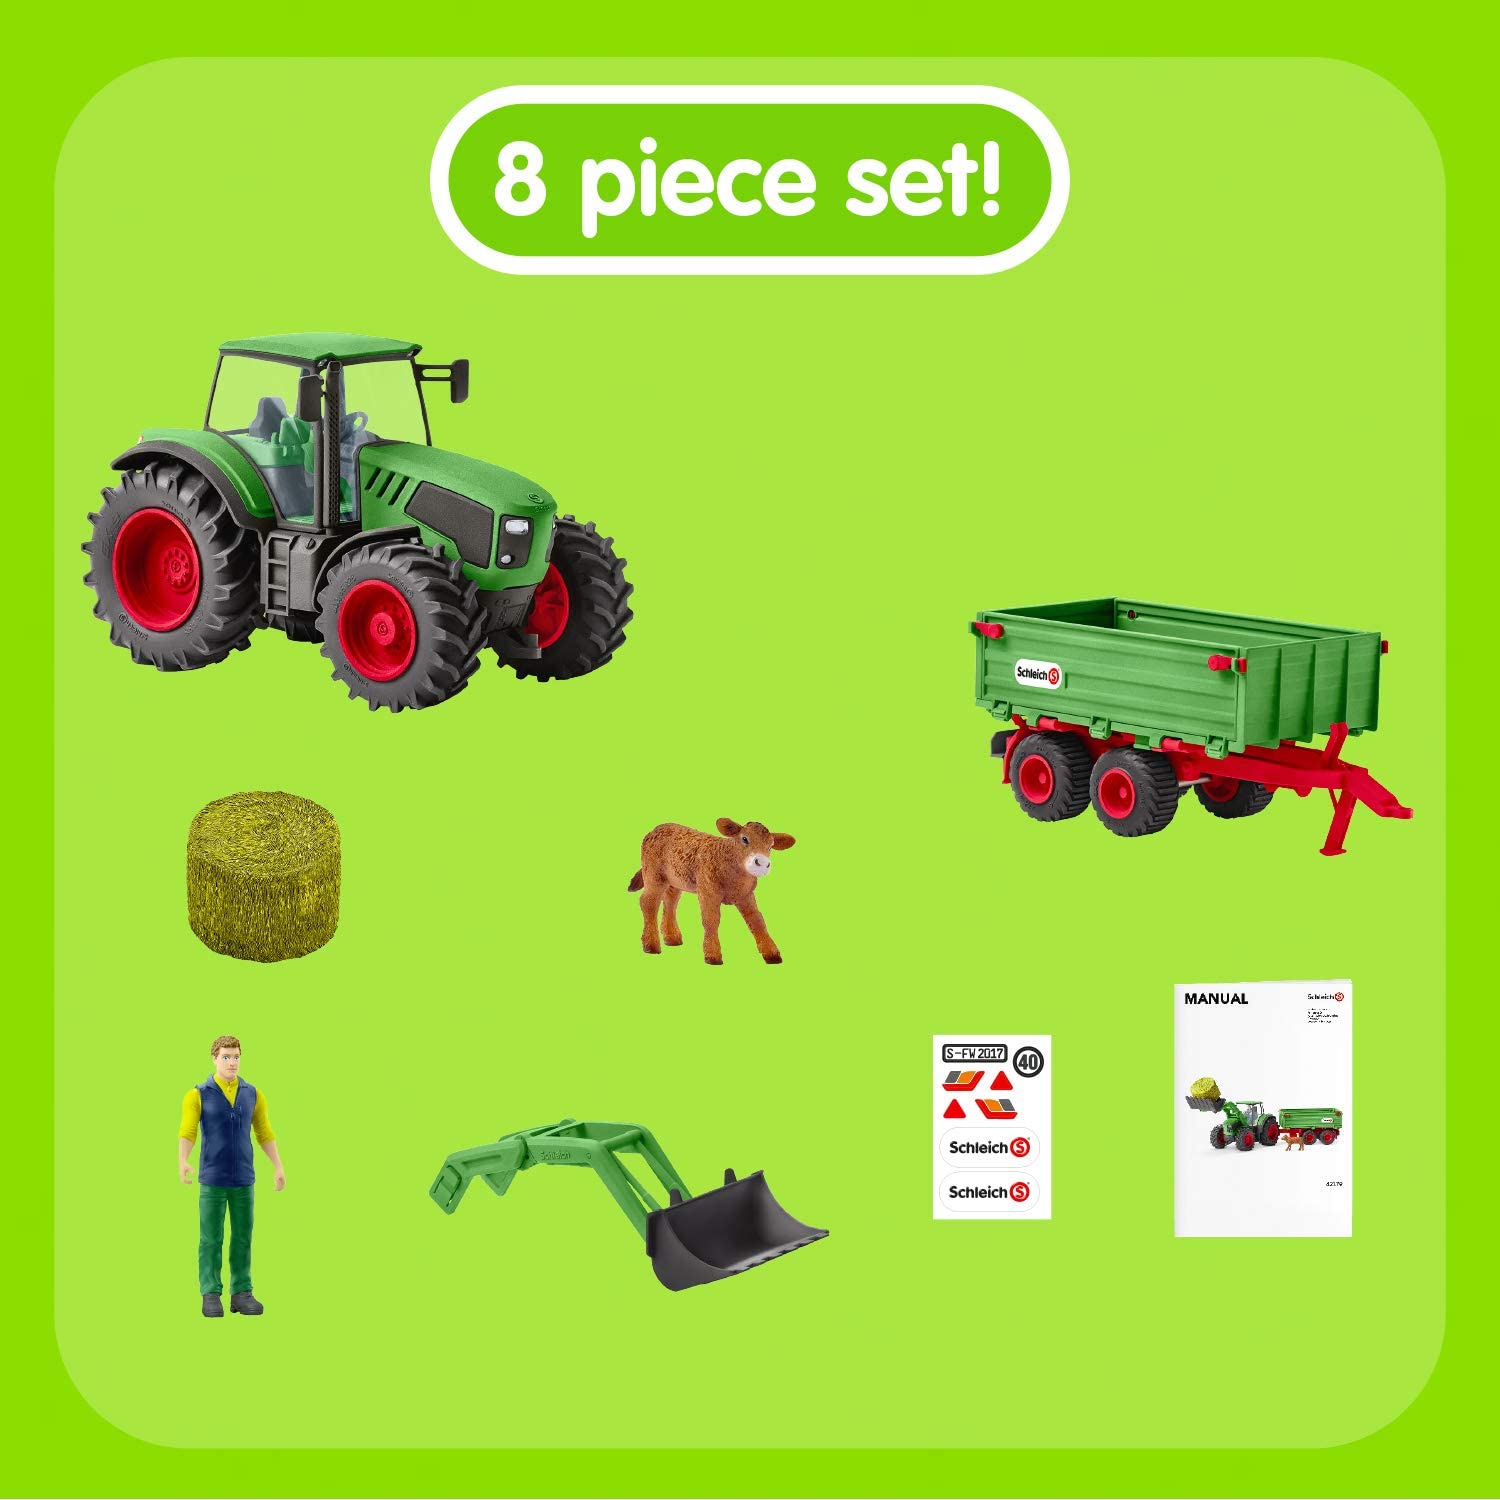 Schleich Tractor With Trailer